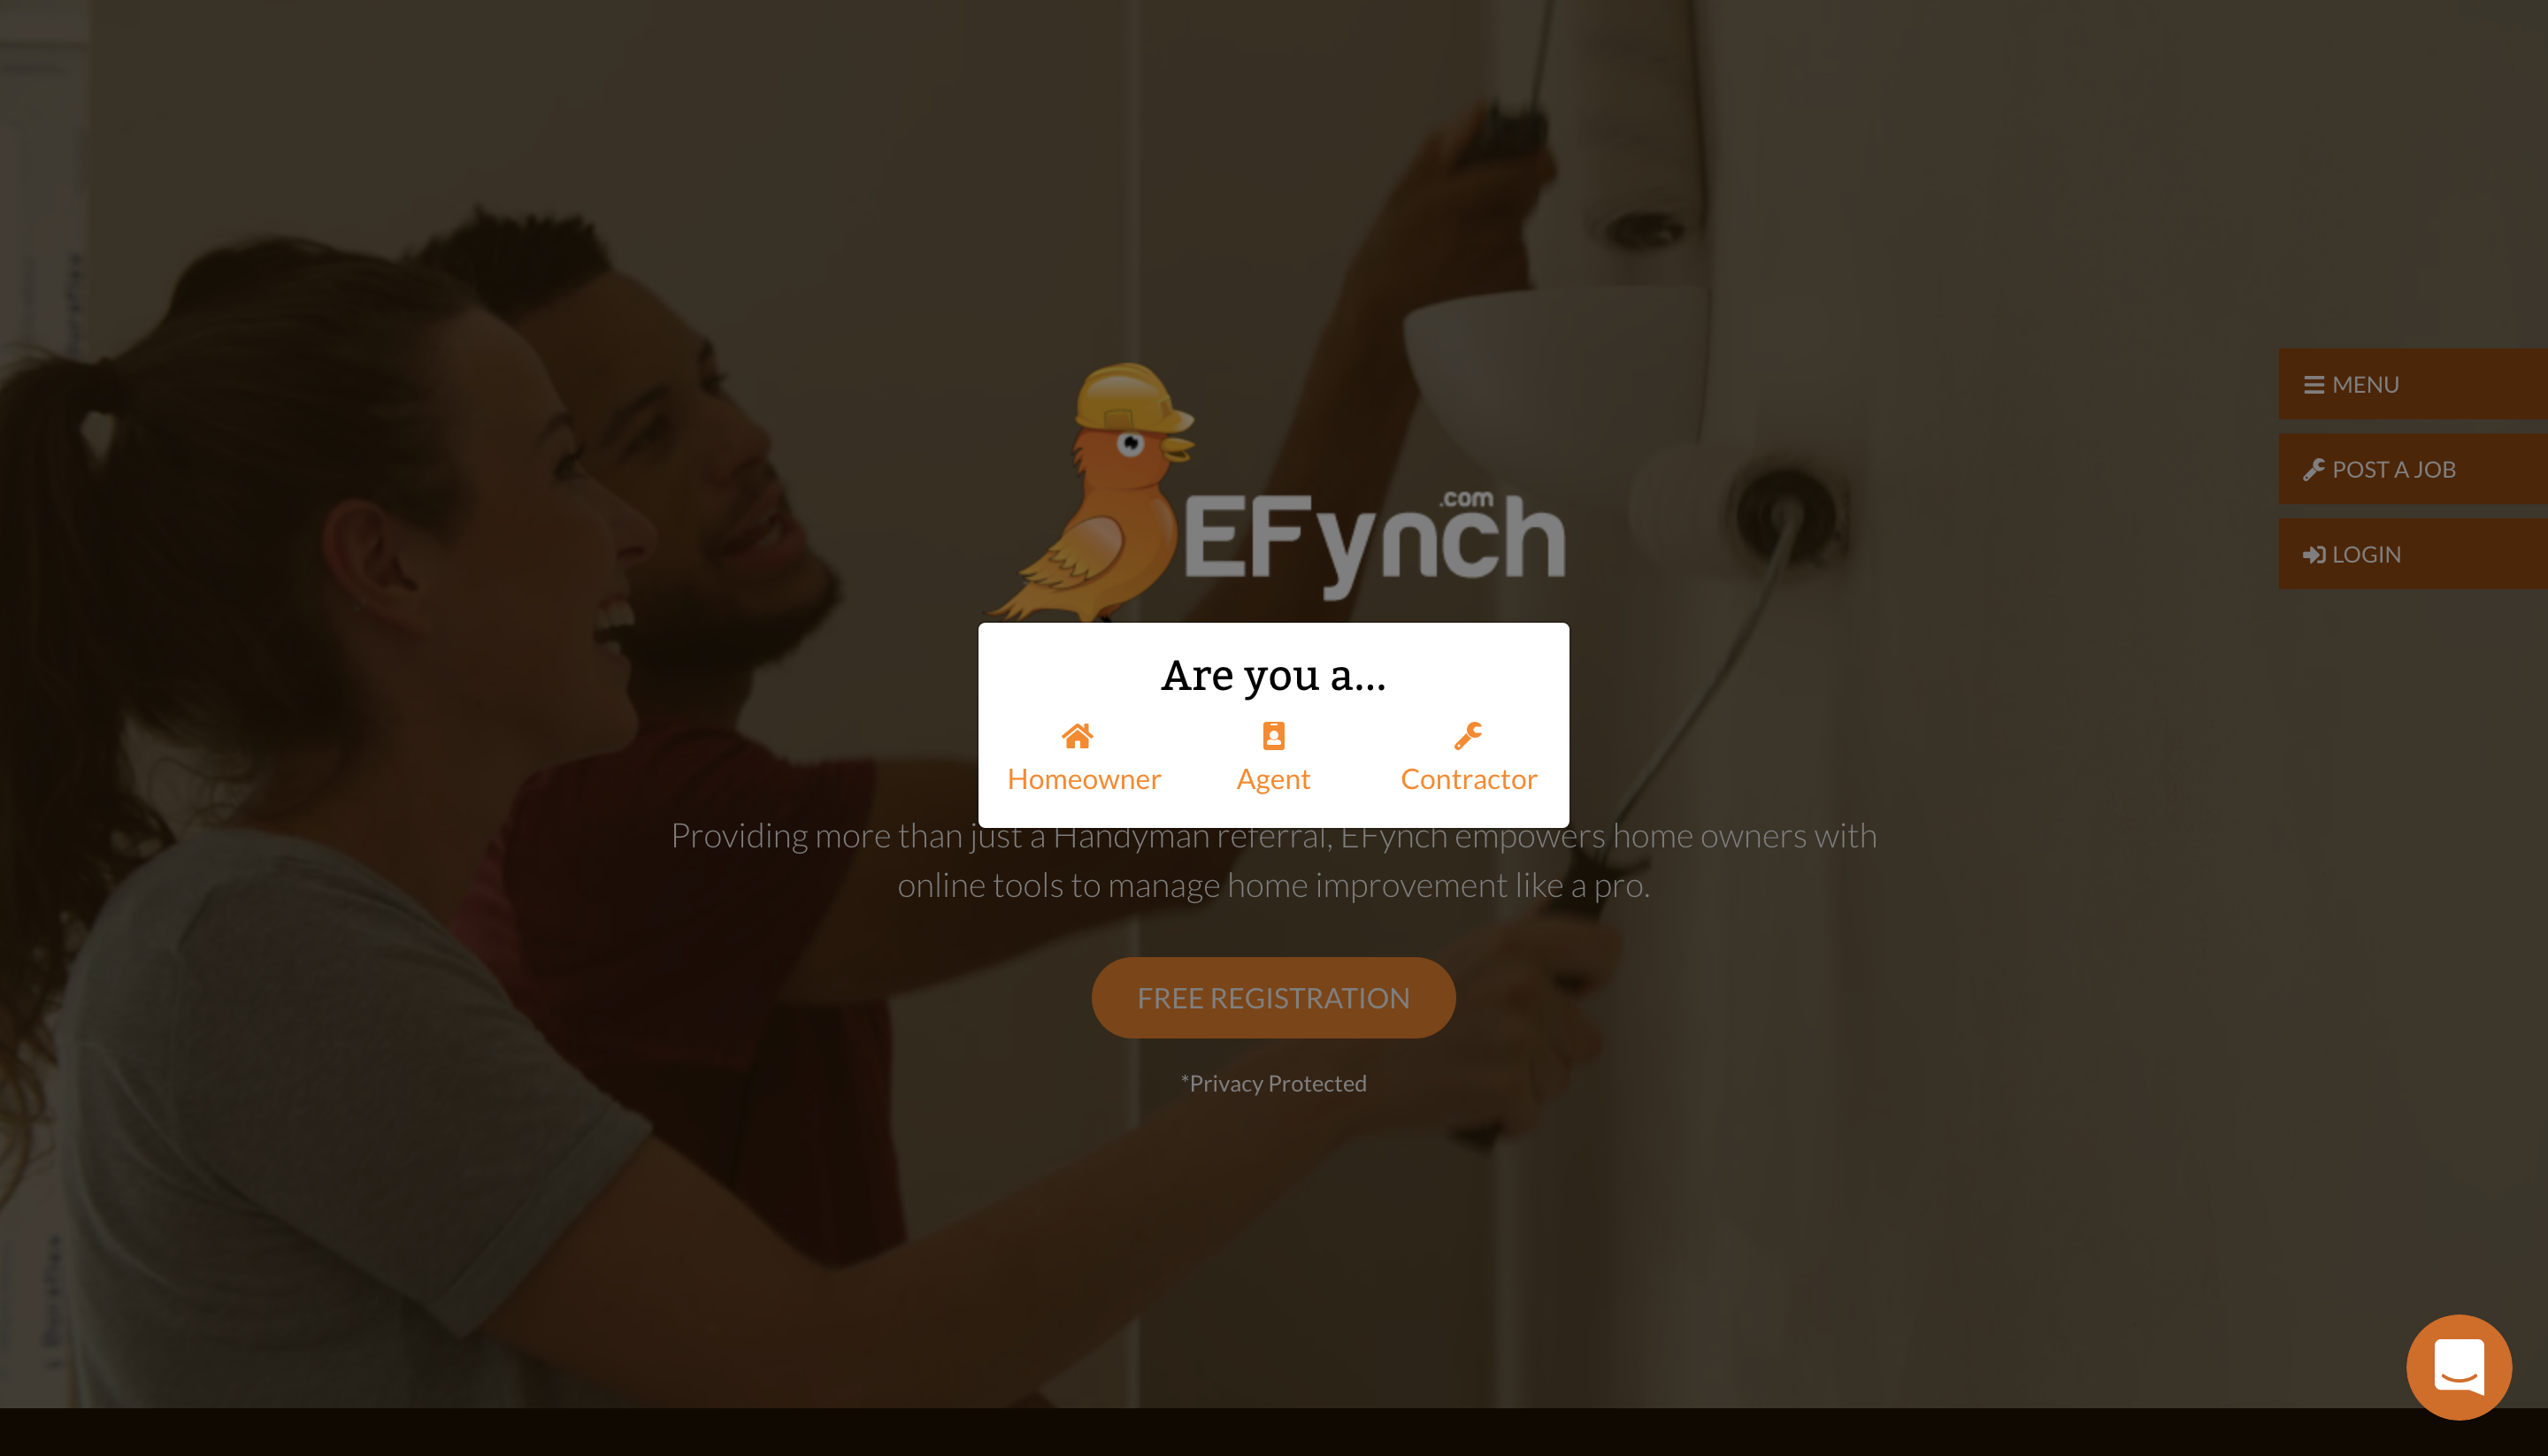 EFynch Startup Website Design